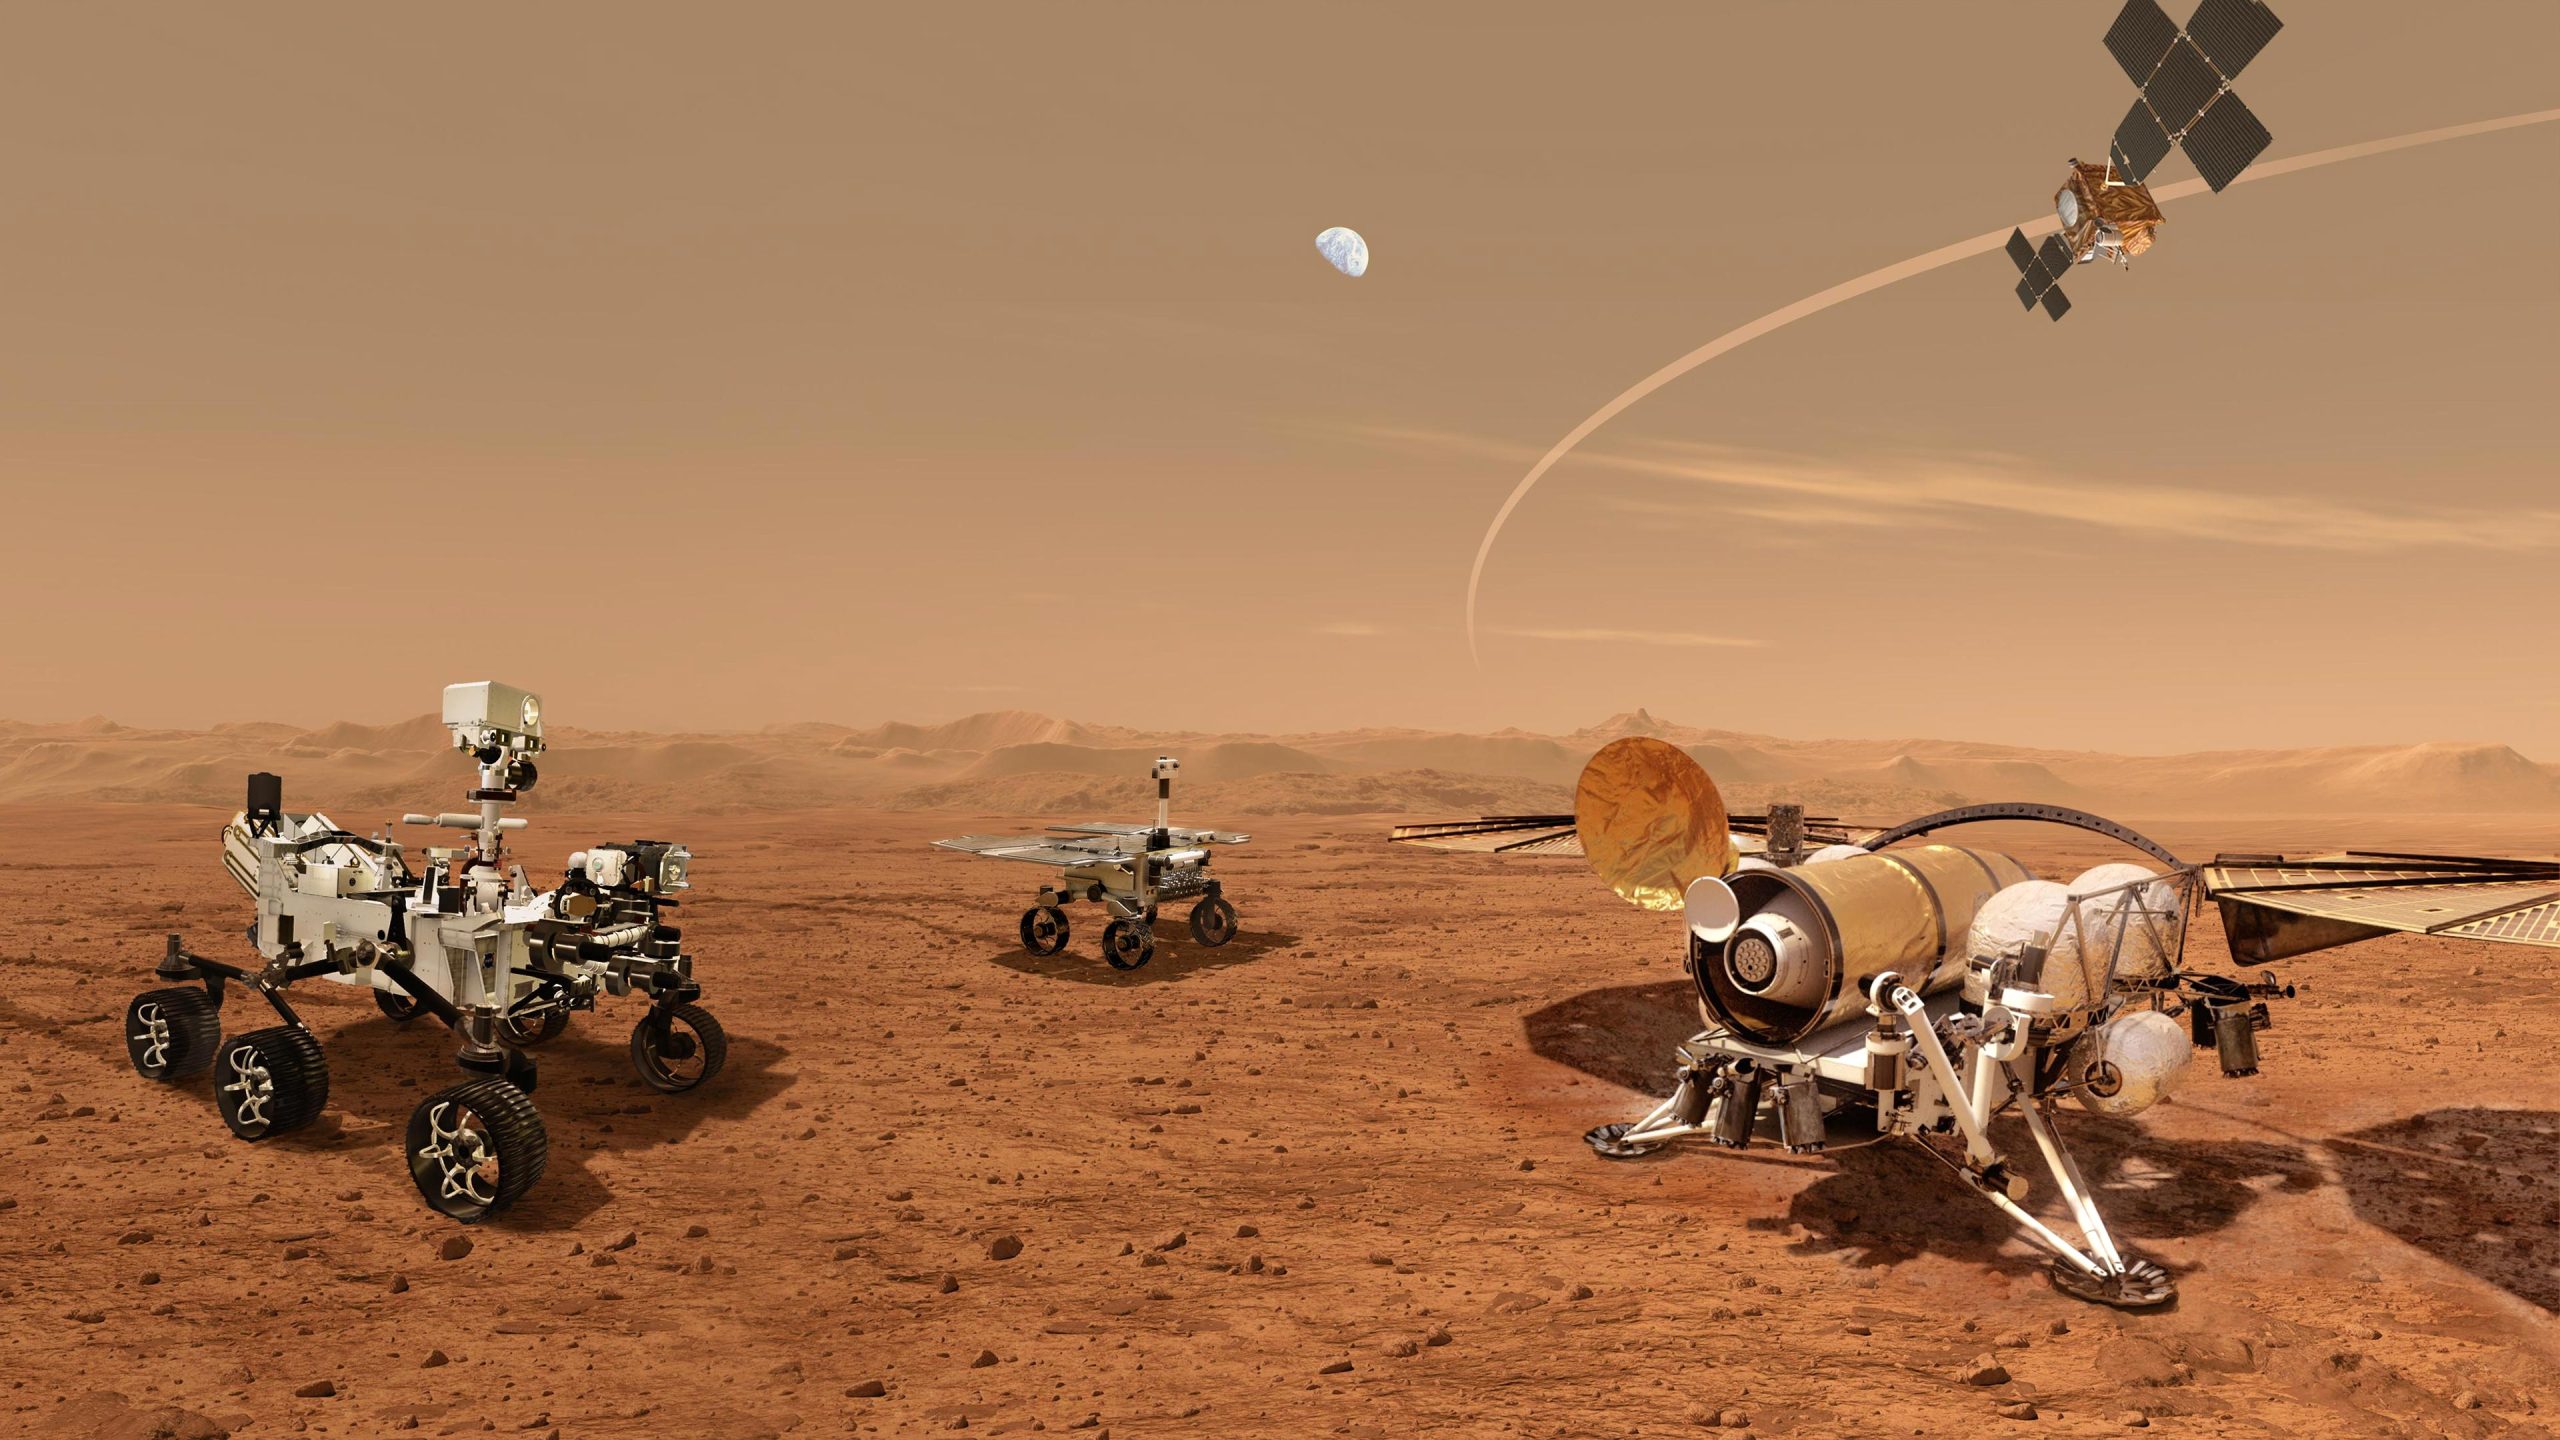 สร้างสนามพลังให้ดาวอังคาร เตรียมพร้อมสู่การเป็นโลกใบที่ 2 แห่งอนาคต